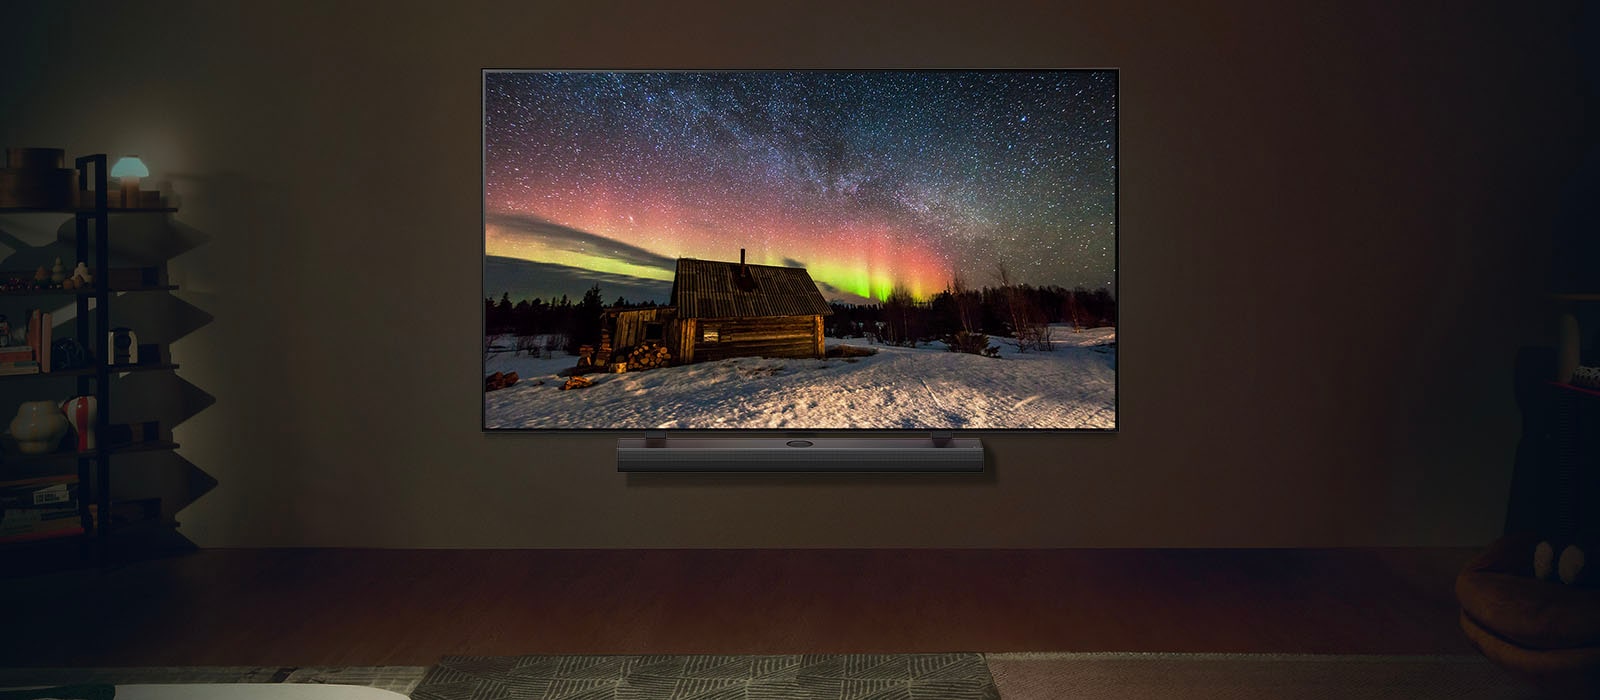 LG TV và LG Loa thanh trong không gian sống hiện đại vào ban ngày. Hình ảnh màn hình cực quang được hiển thị với mức độ sáng lý tưởng.